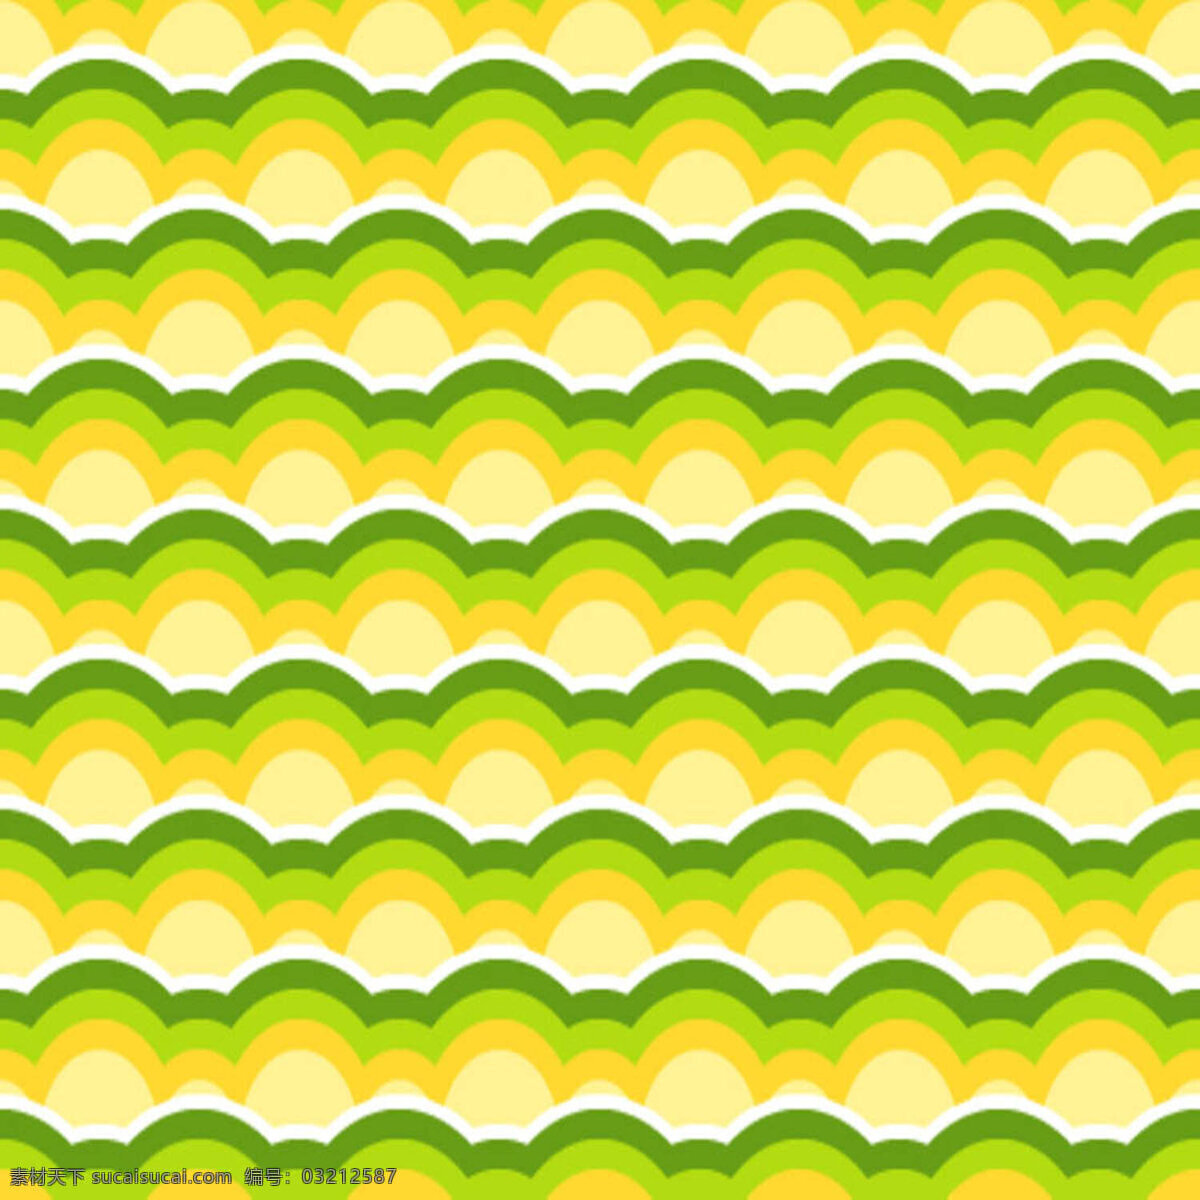 波纹 波纹素材 黄色 绿色 纹理素材 纹路背景 纹路图片 背景图片